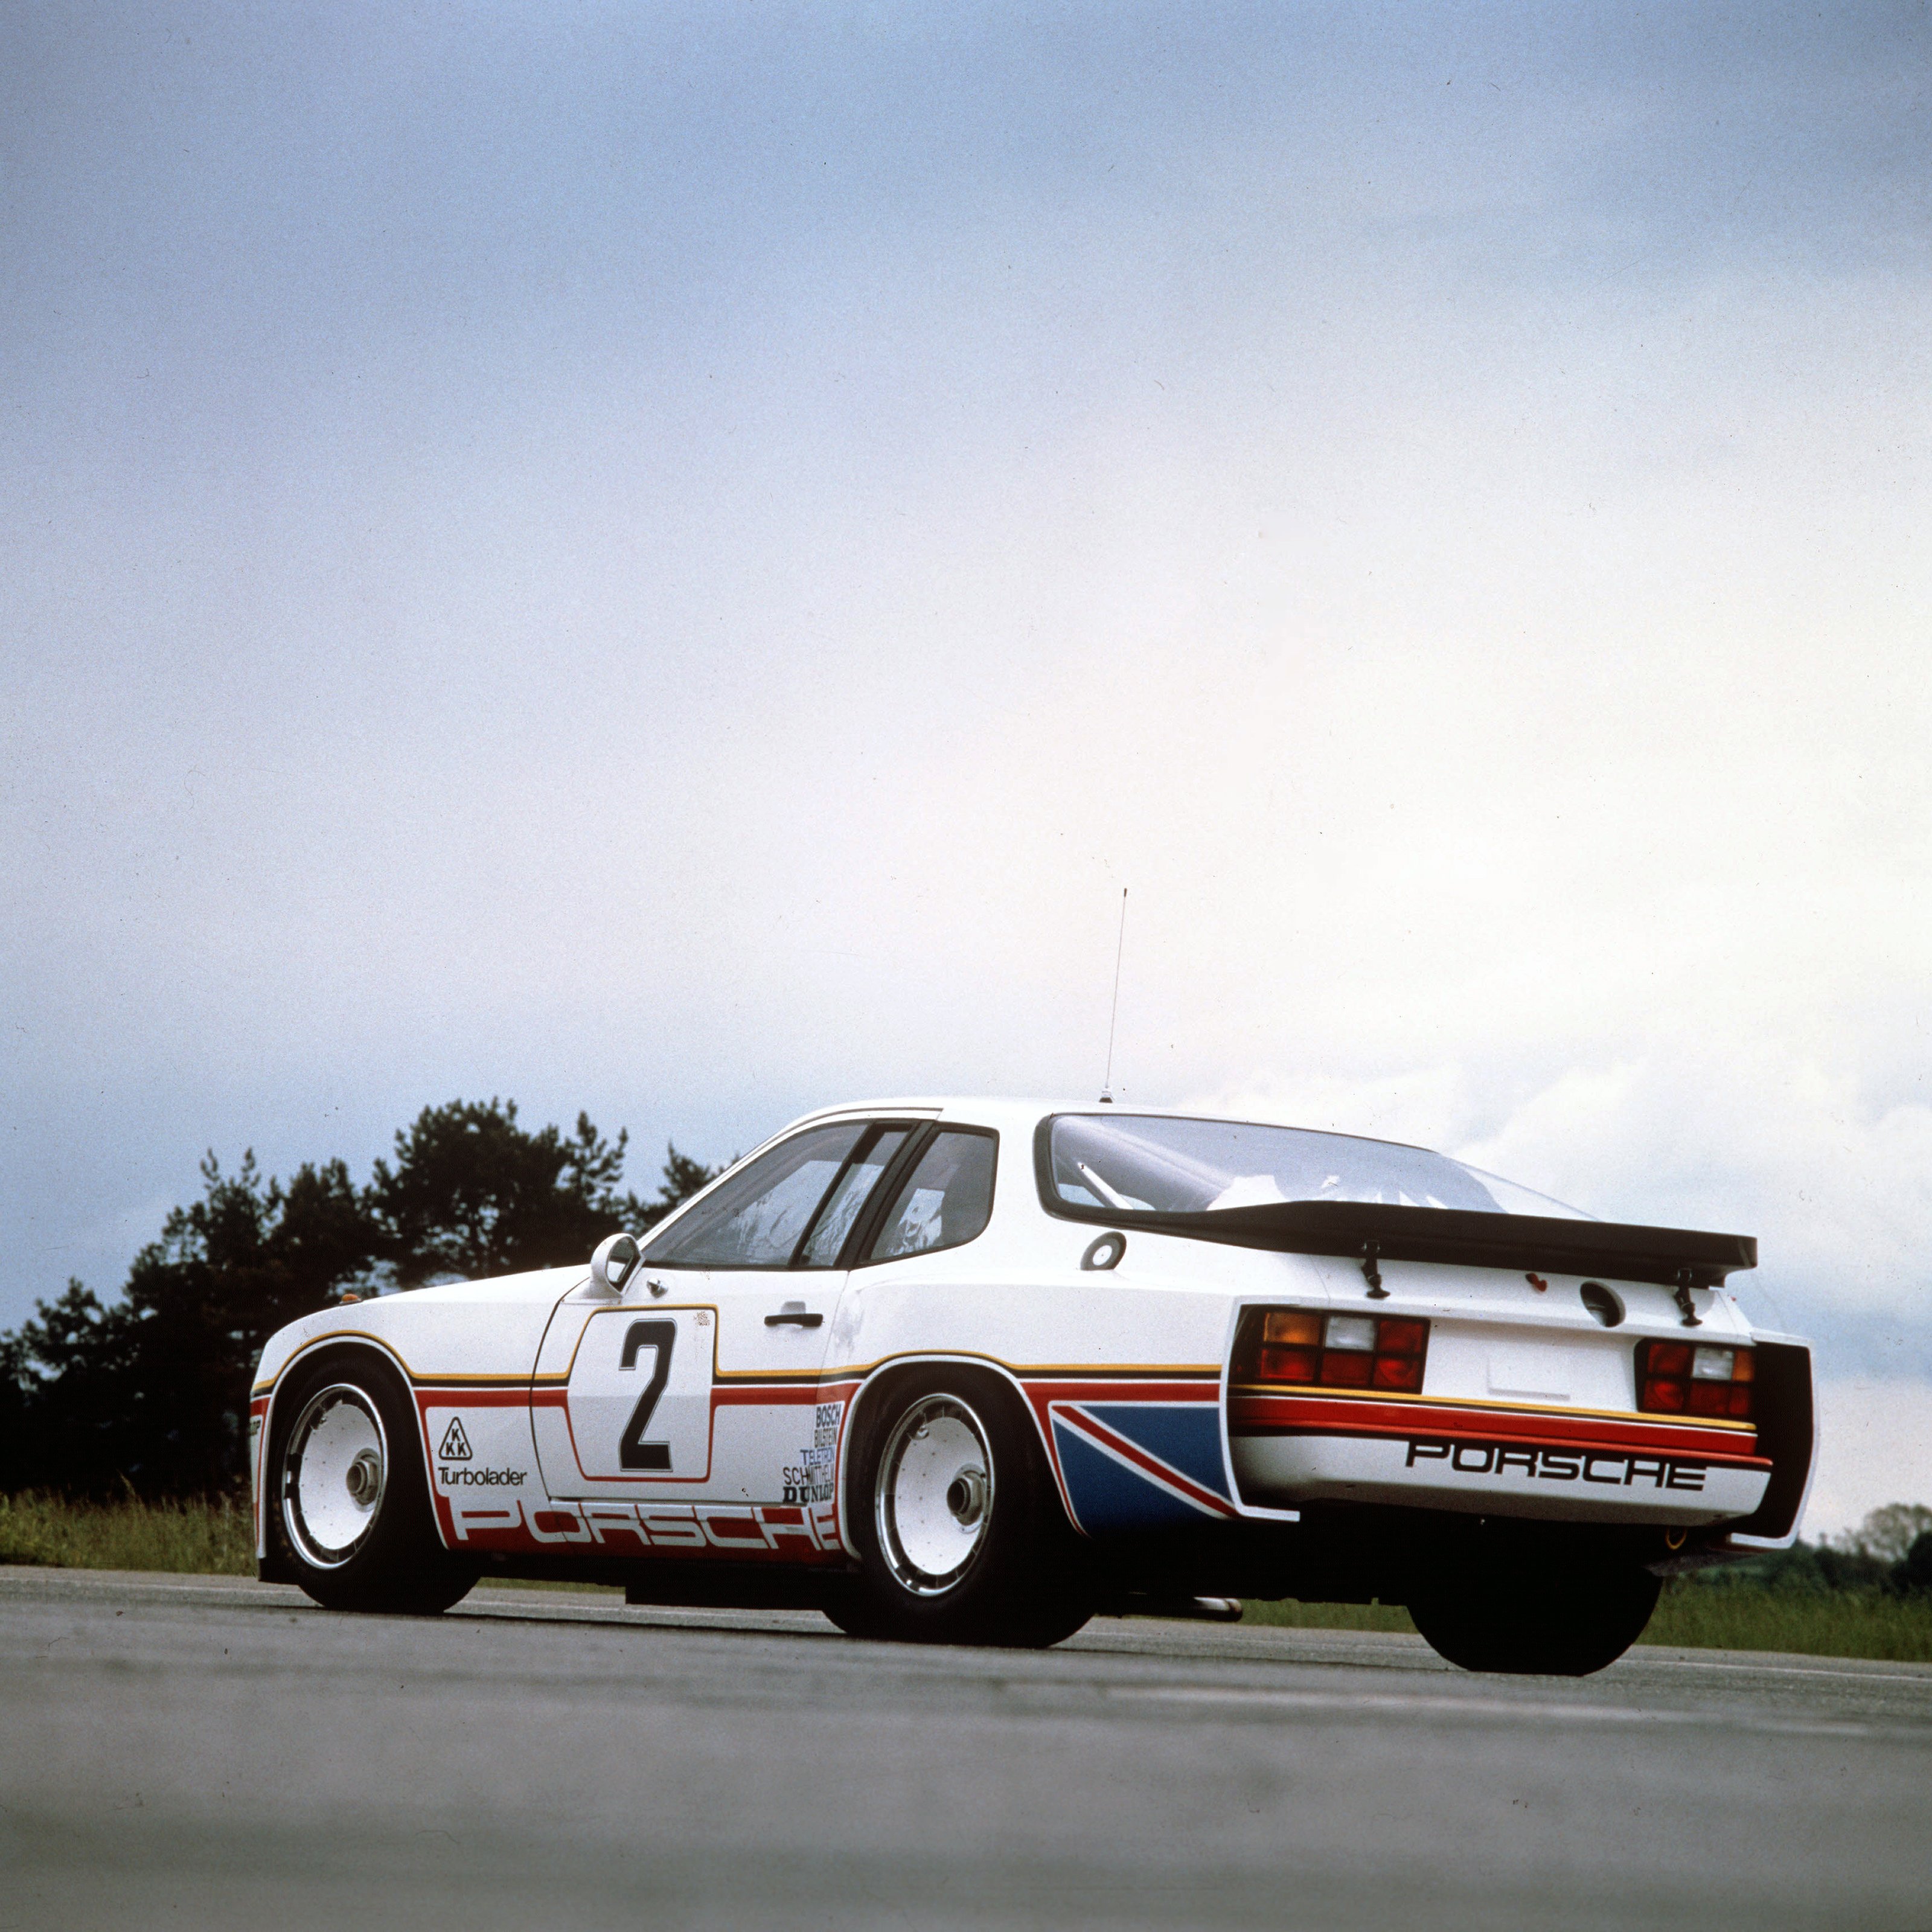 Porsche 924 Gtr Wallpapers